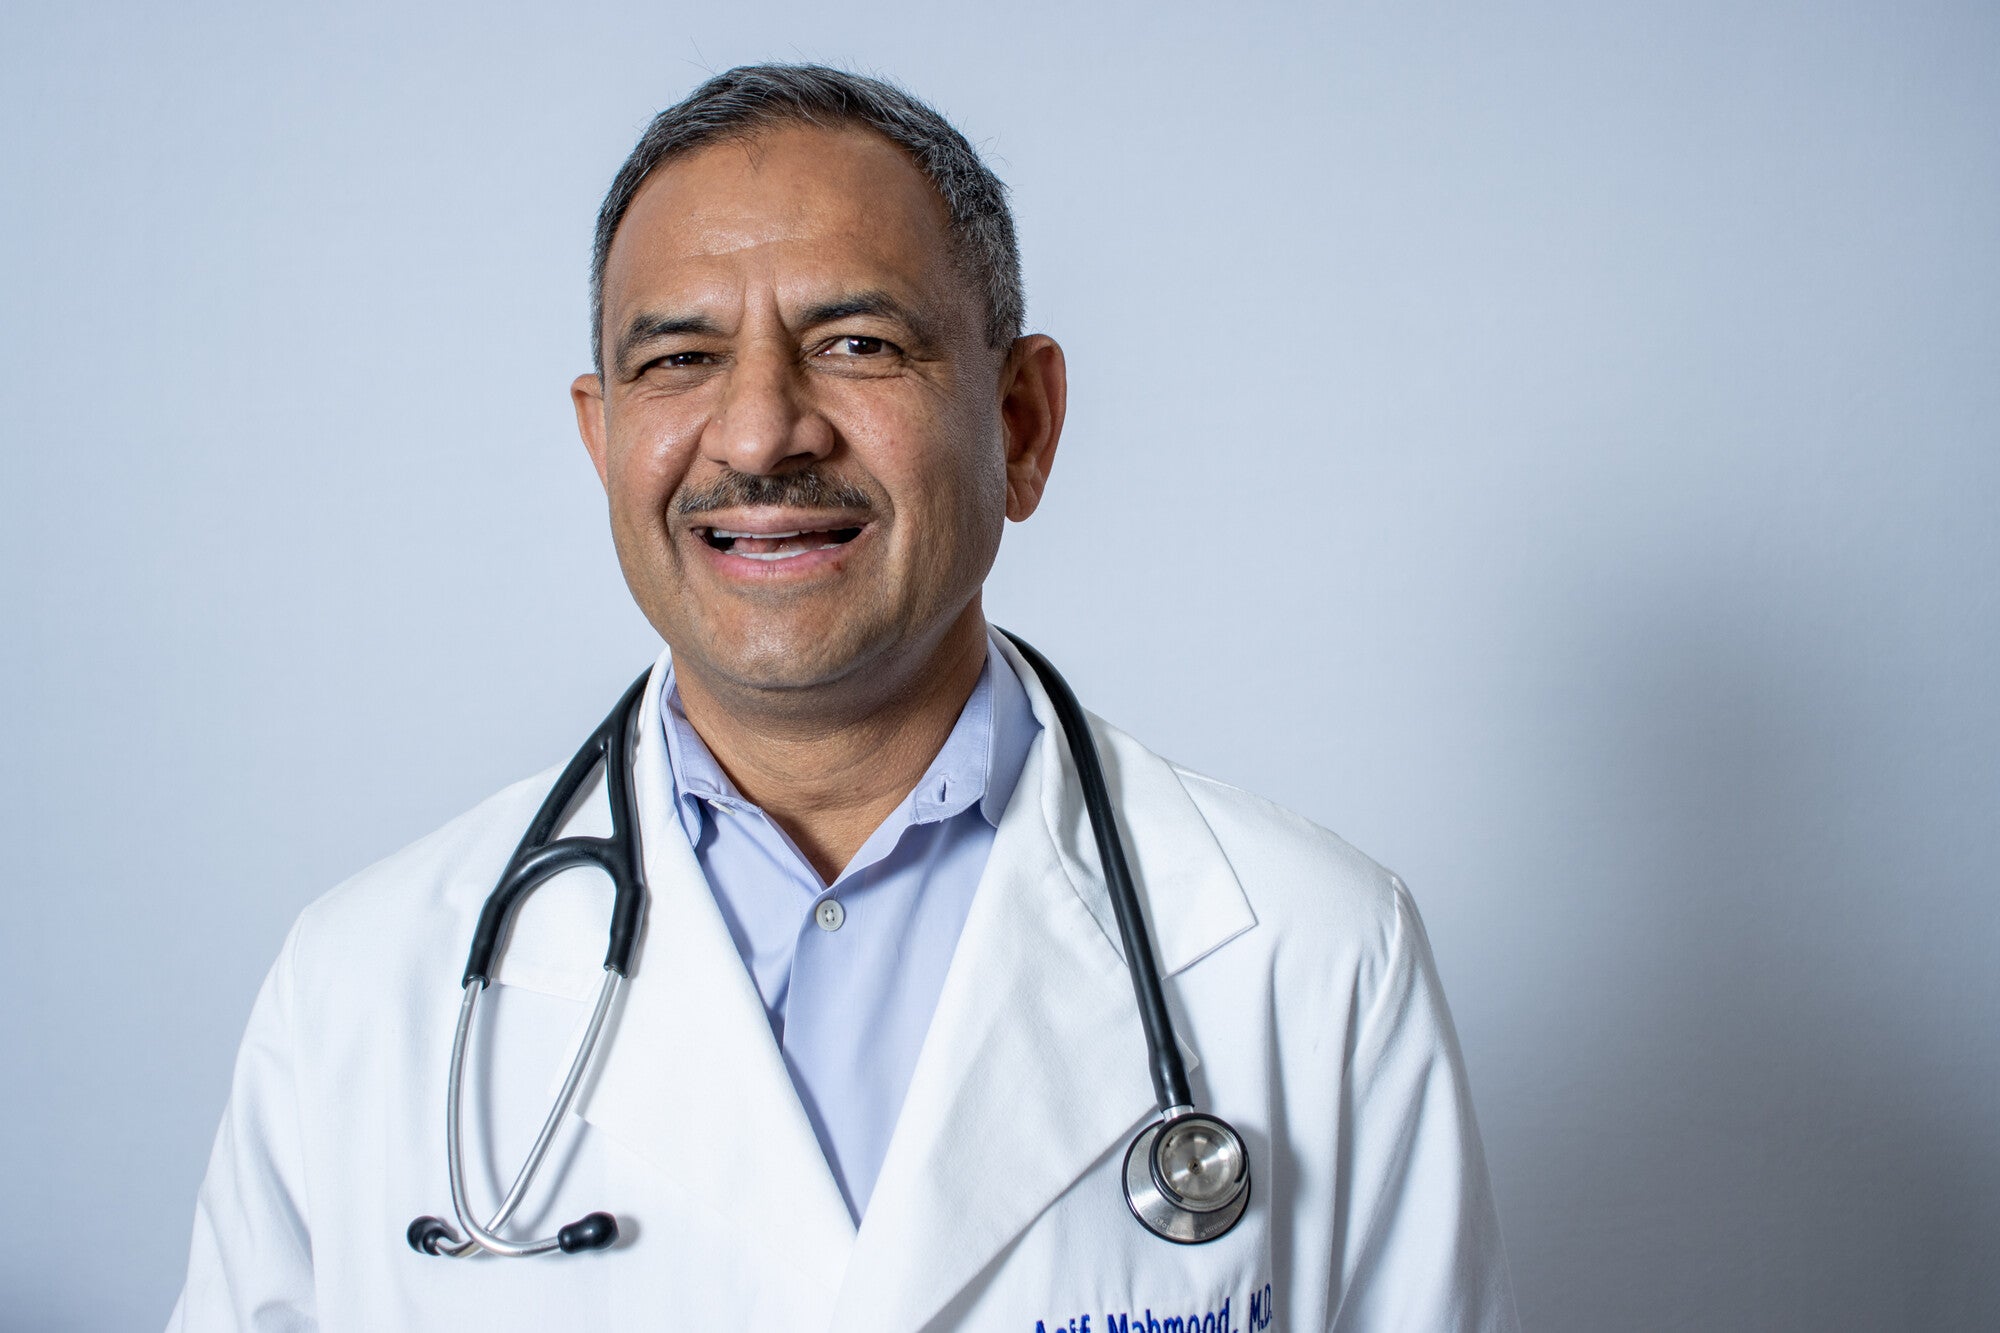 El Dr. Asif Mahmood sostiene que muchos de los temas centrales de estas elecciones están relacionados con la salud